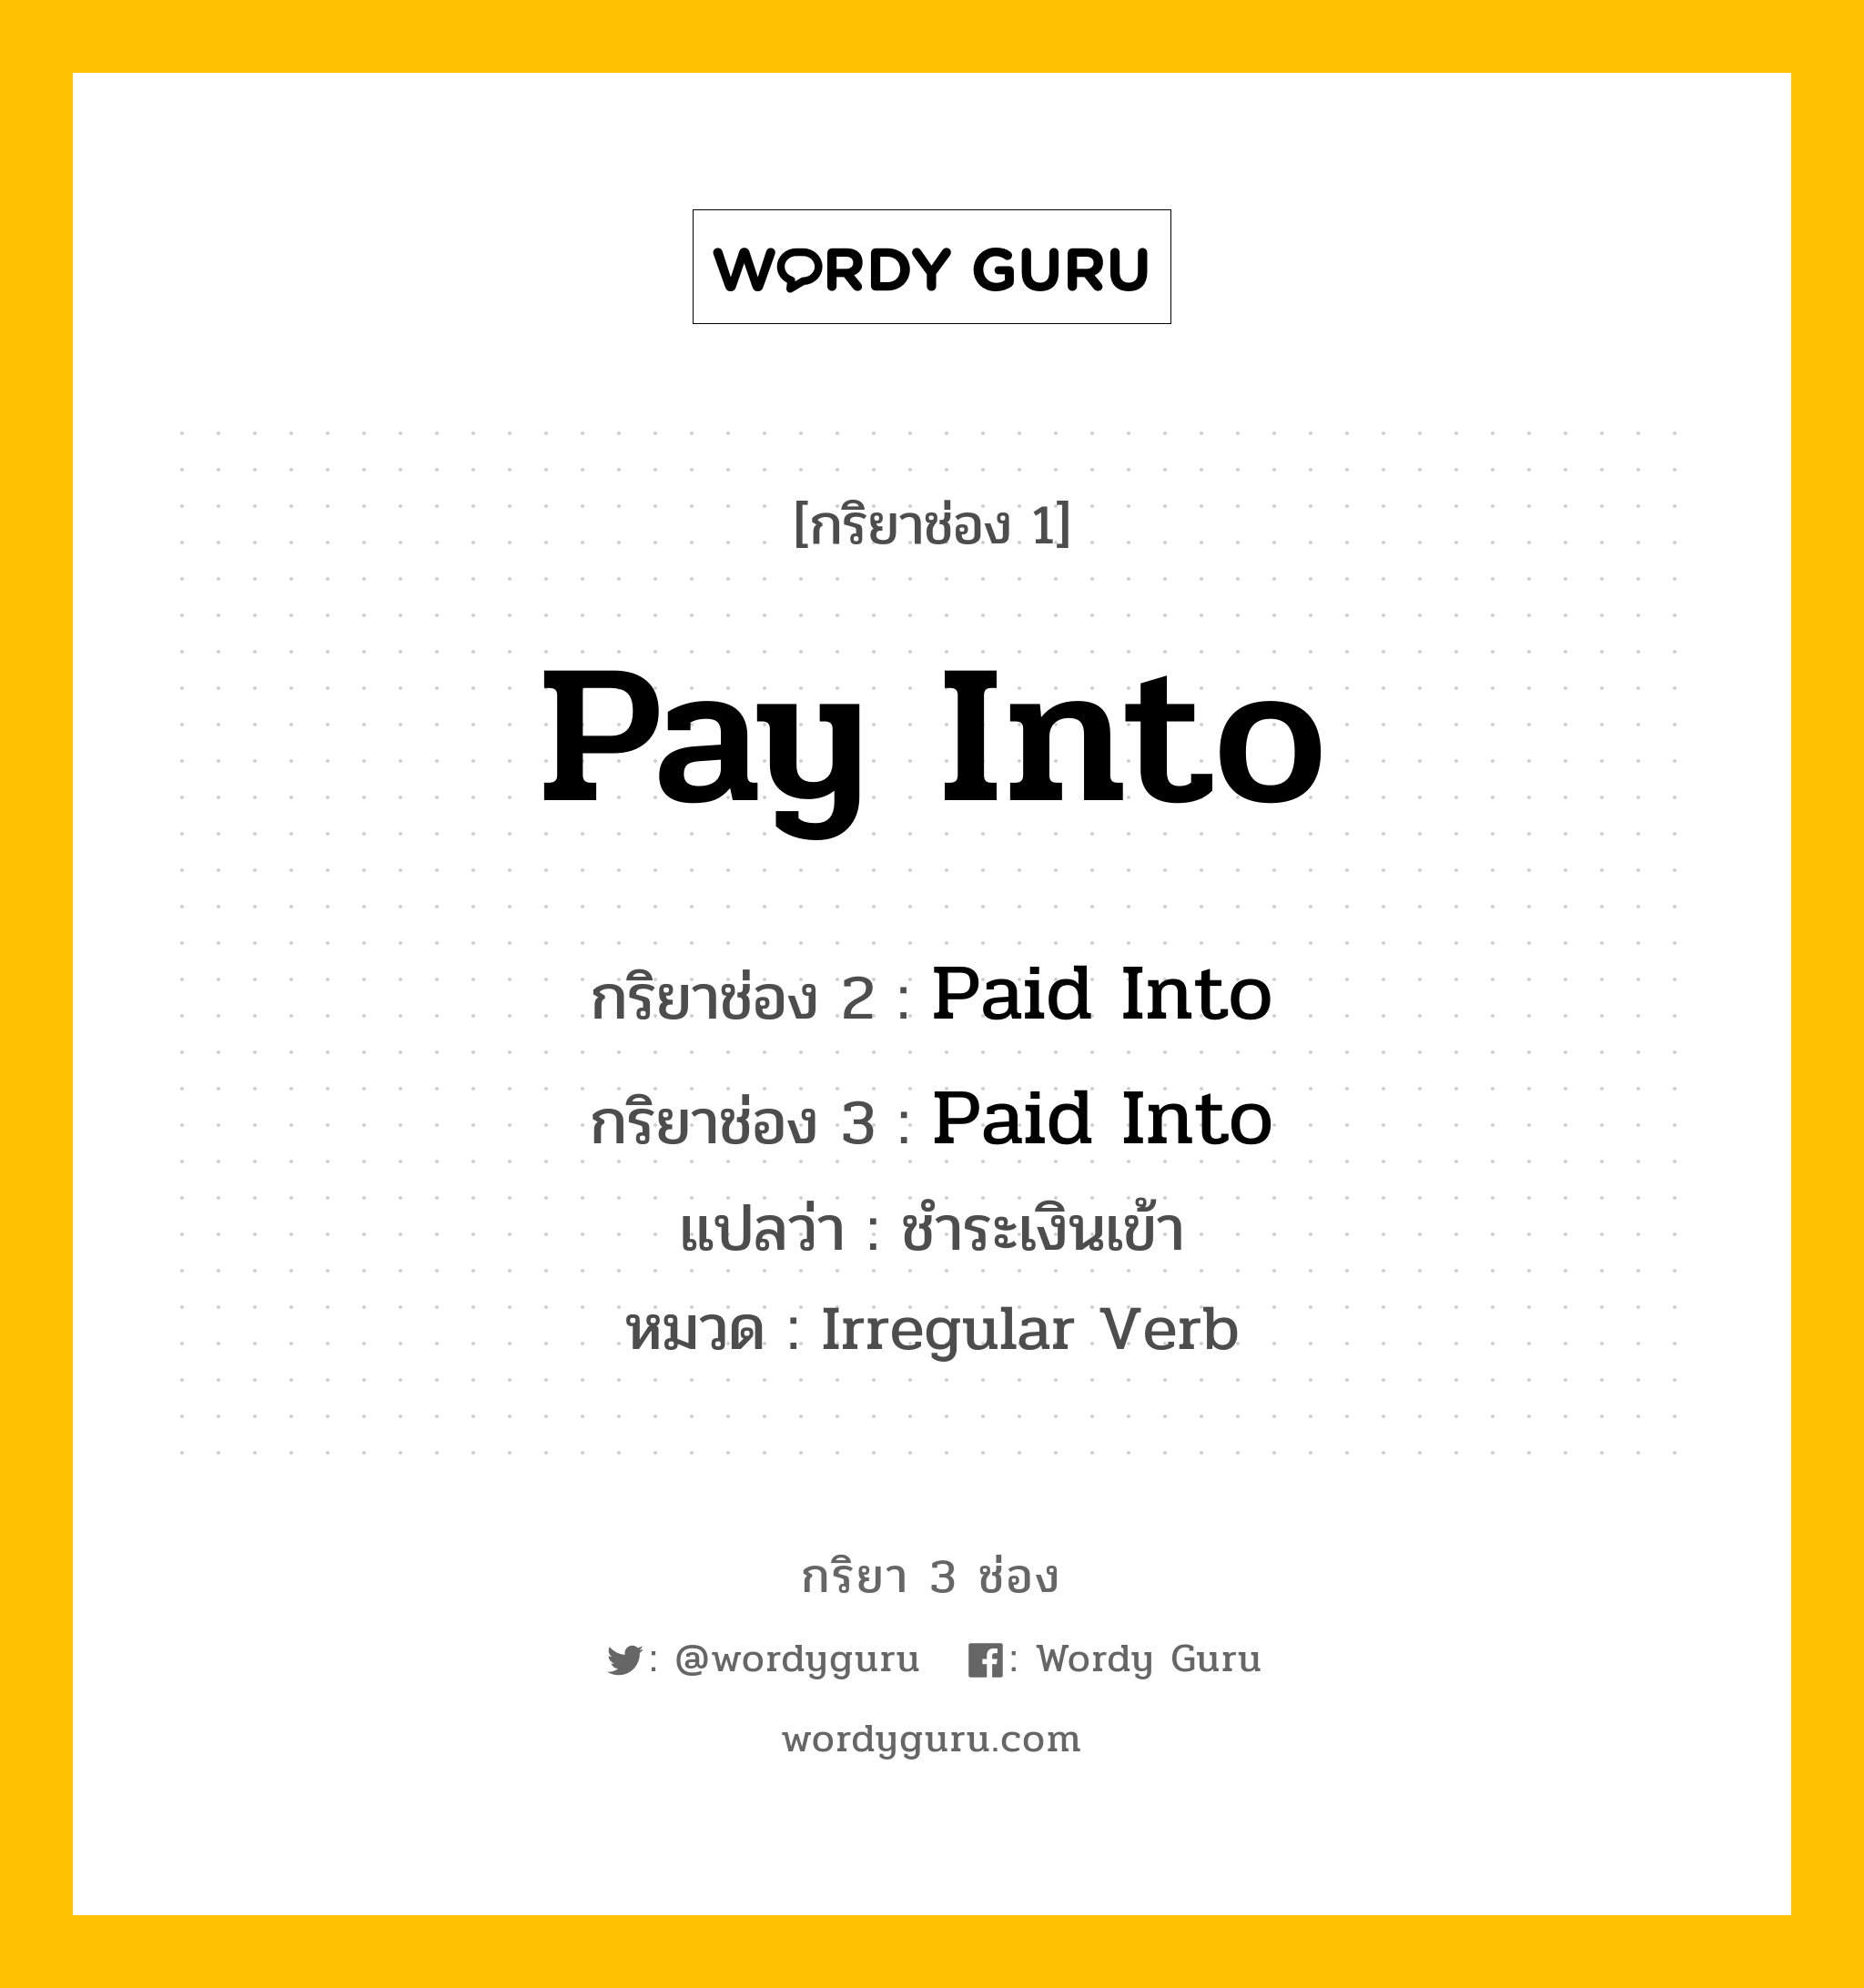 กริยา 3 ช่อง ของ Pay Into คืออะไร?, กริยาช่อง 1 Pay Into กริยาช่อง 2 Paid Into กริยาช่อง 3 Paid Into แปลว่า ชำระเงินเข้า หมวด Irregular Verb หมวด Irregular Verb